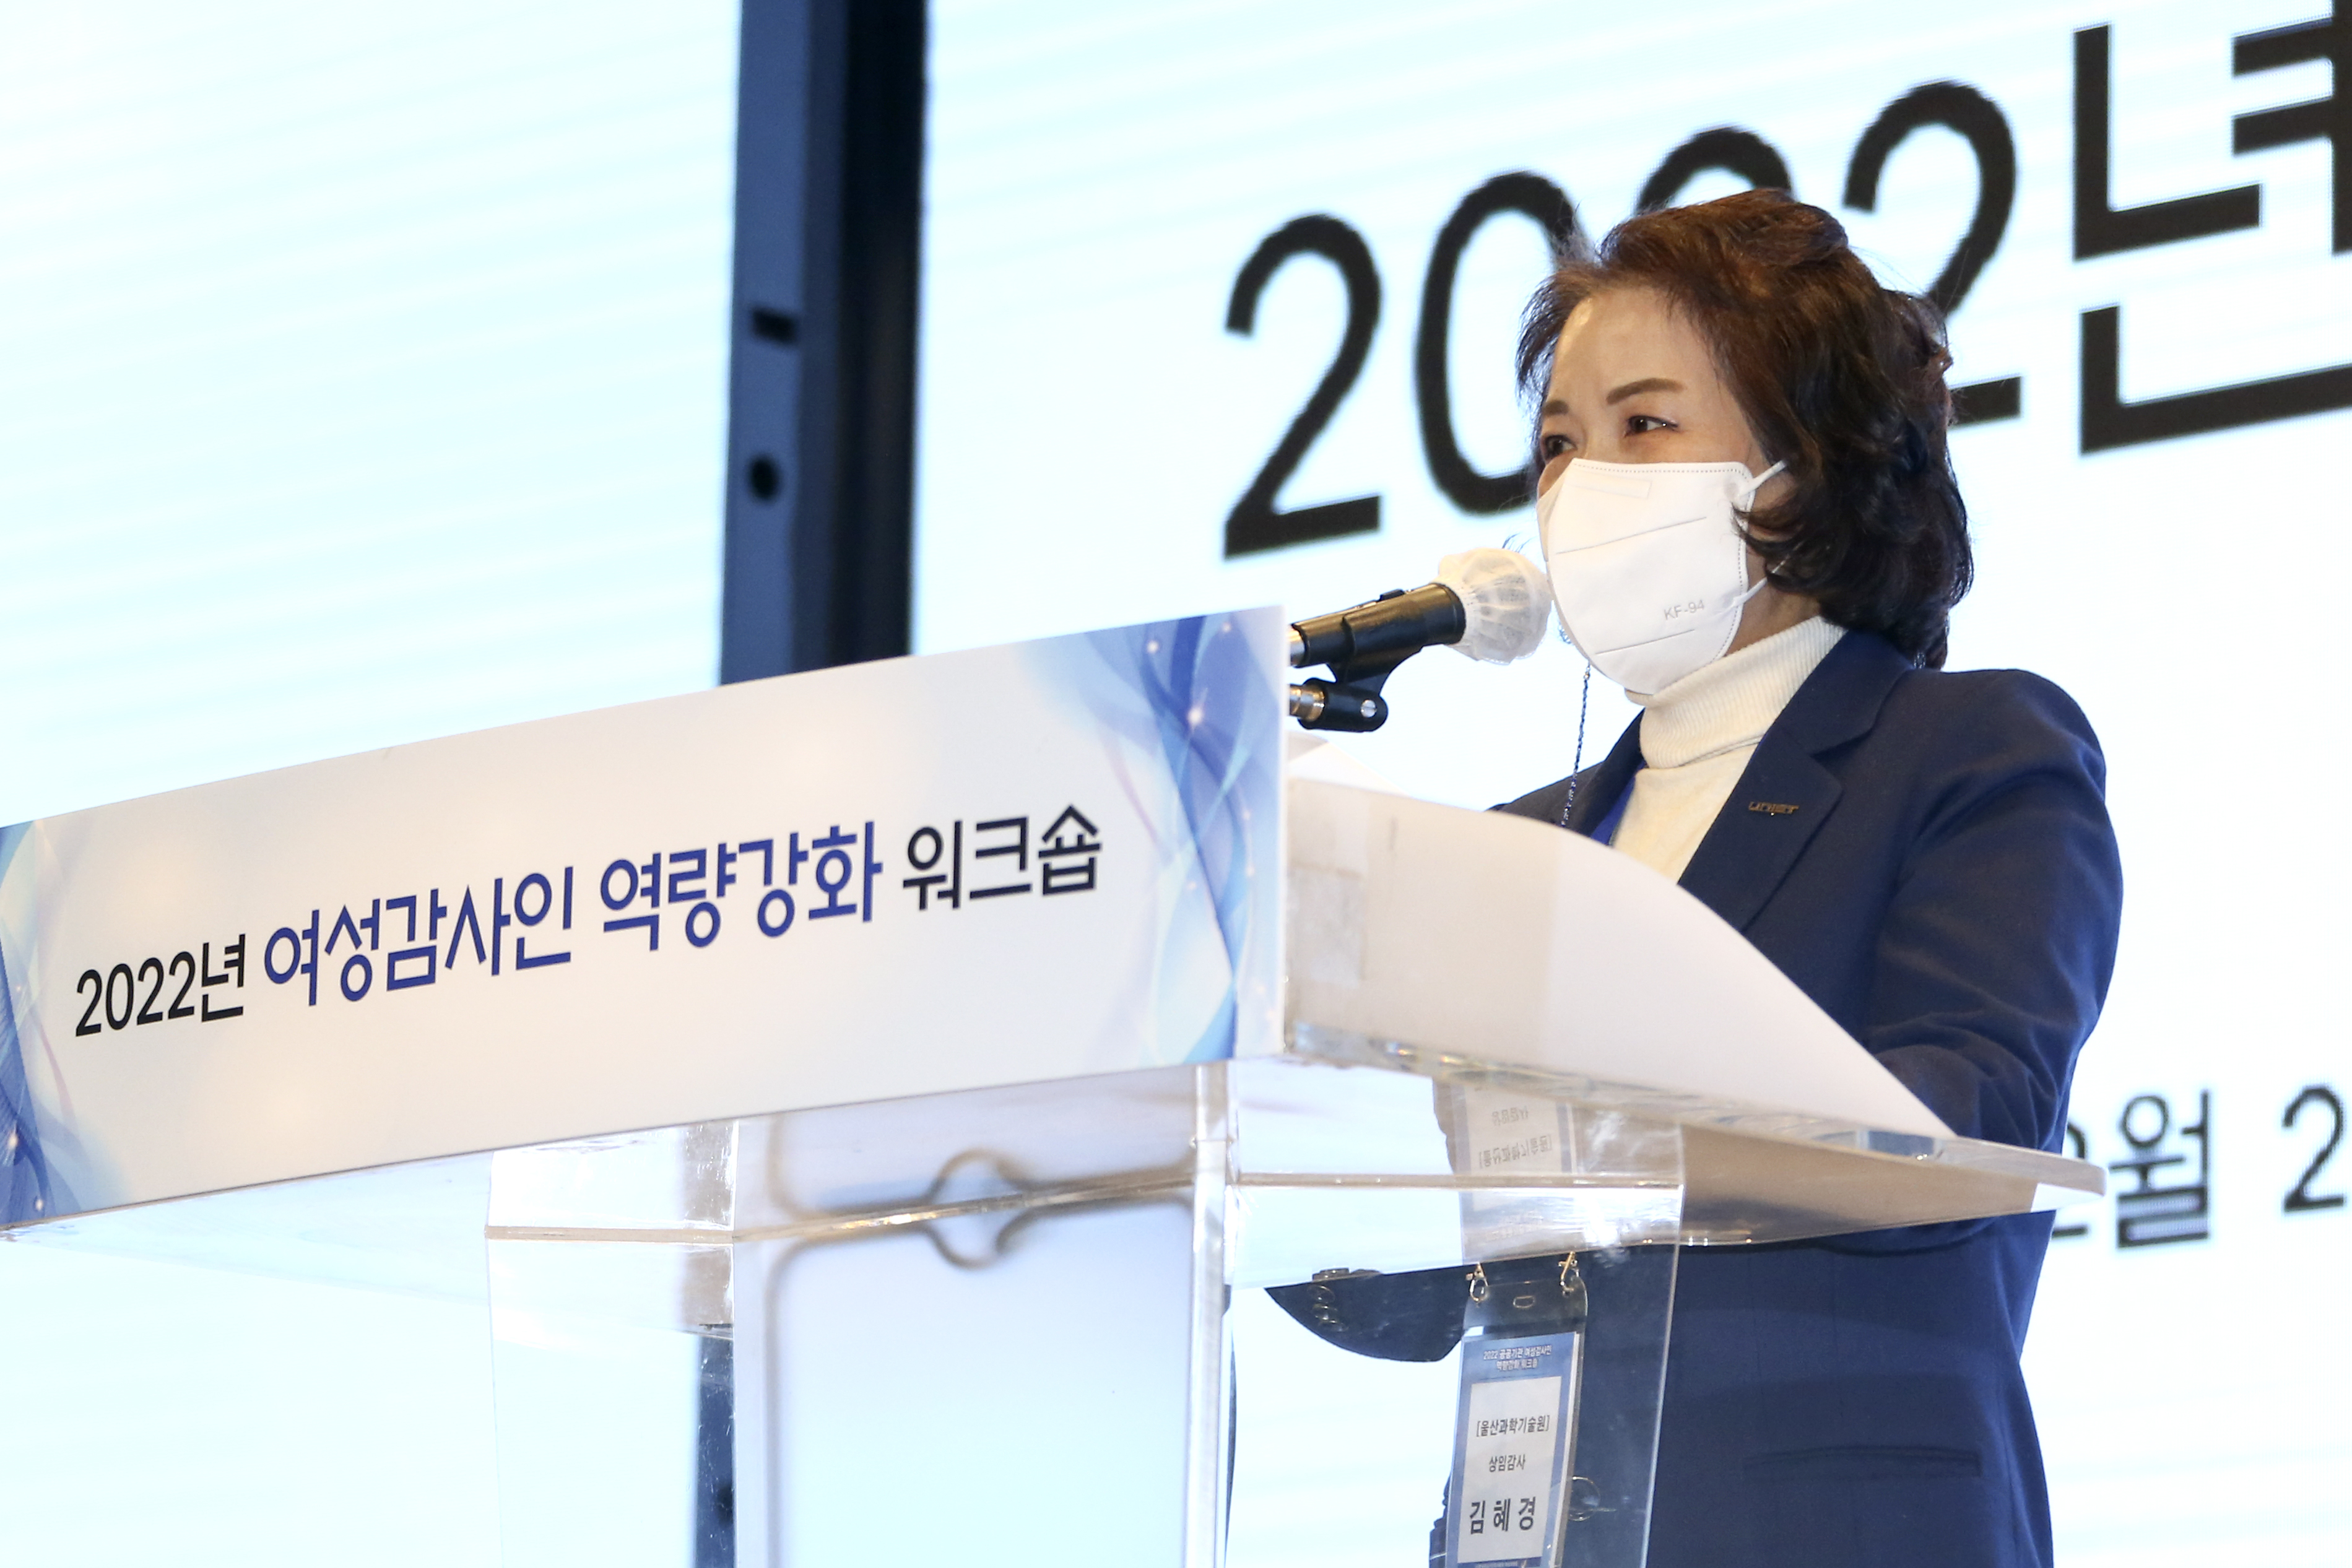 김혜경 UNIST 상임감사가 연설을 하고 있다 | 사진: 감사실